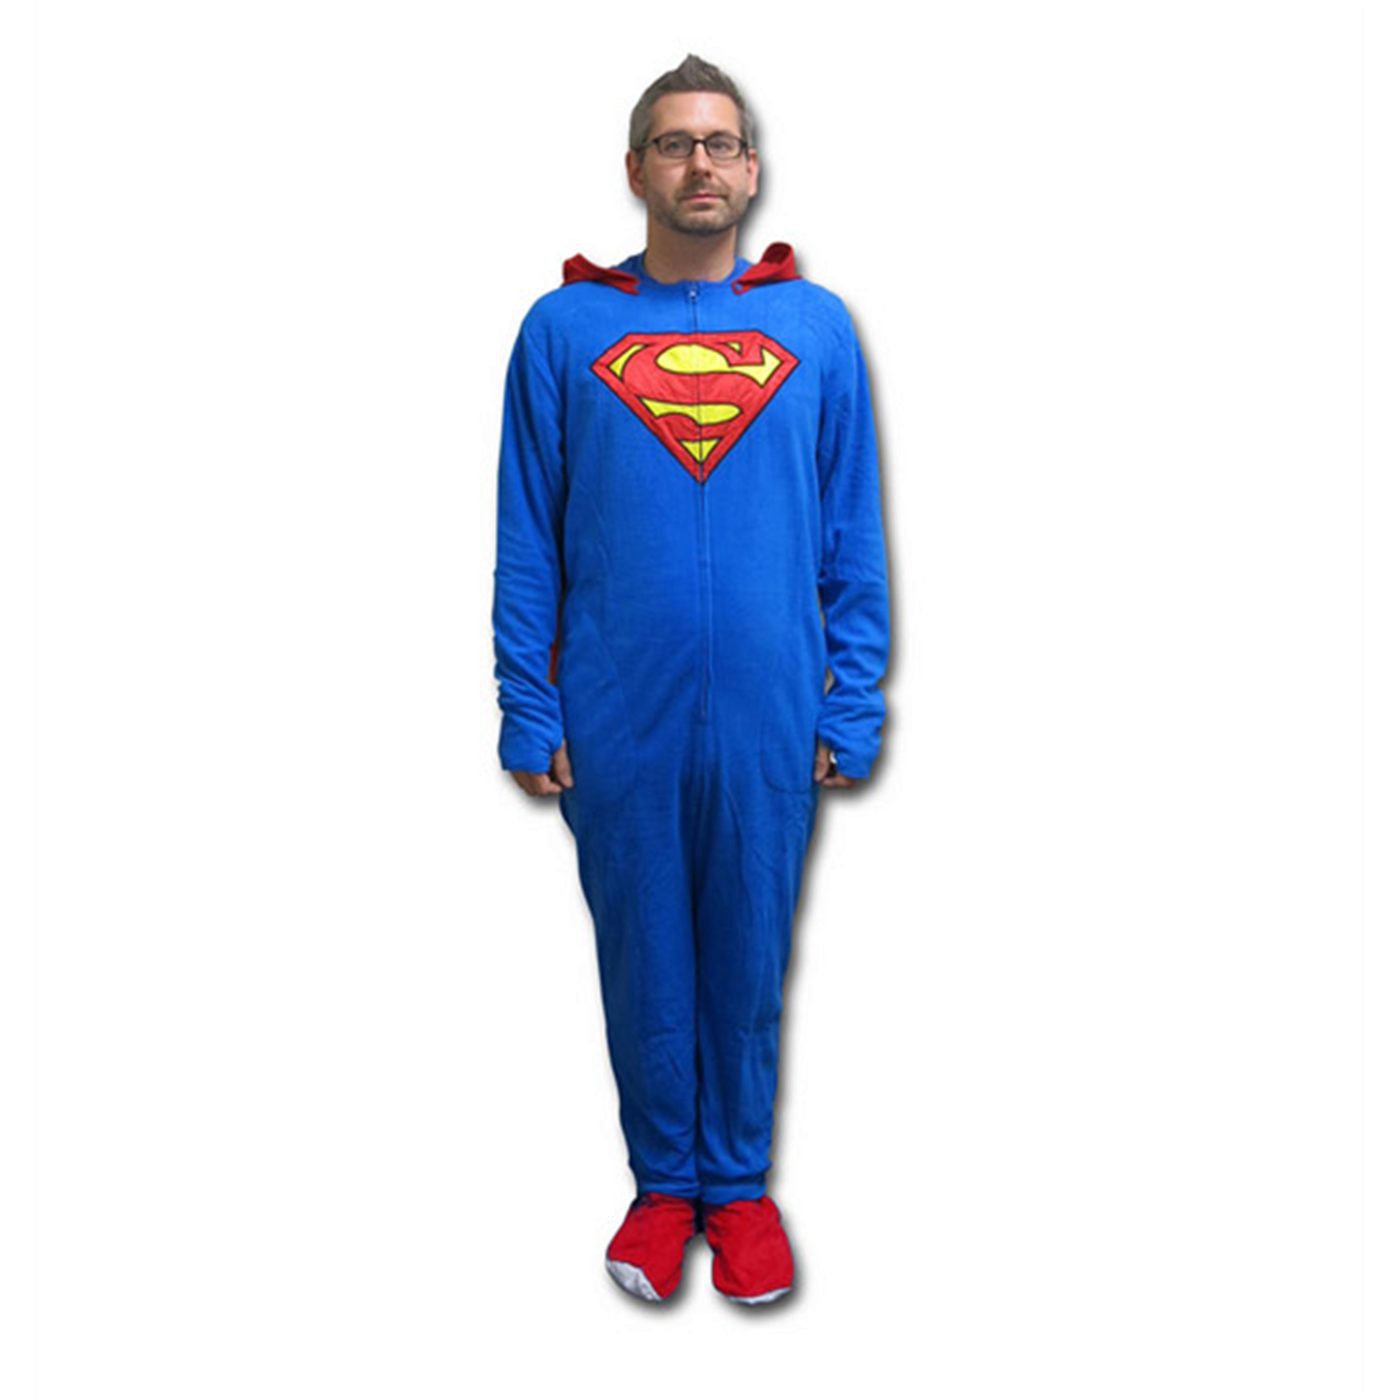 Superman Union Suit Pajamas